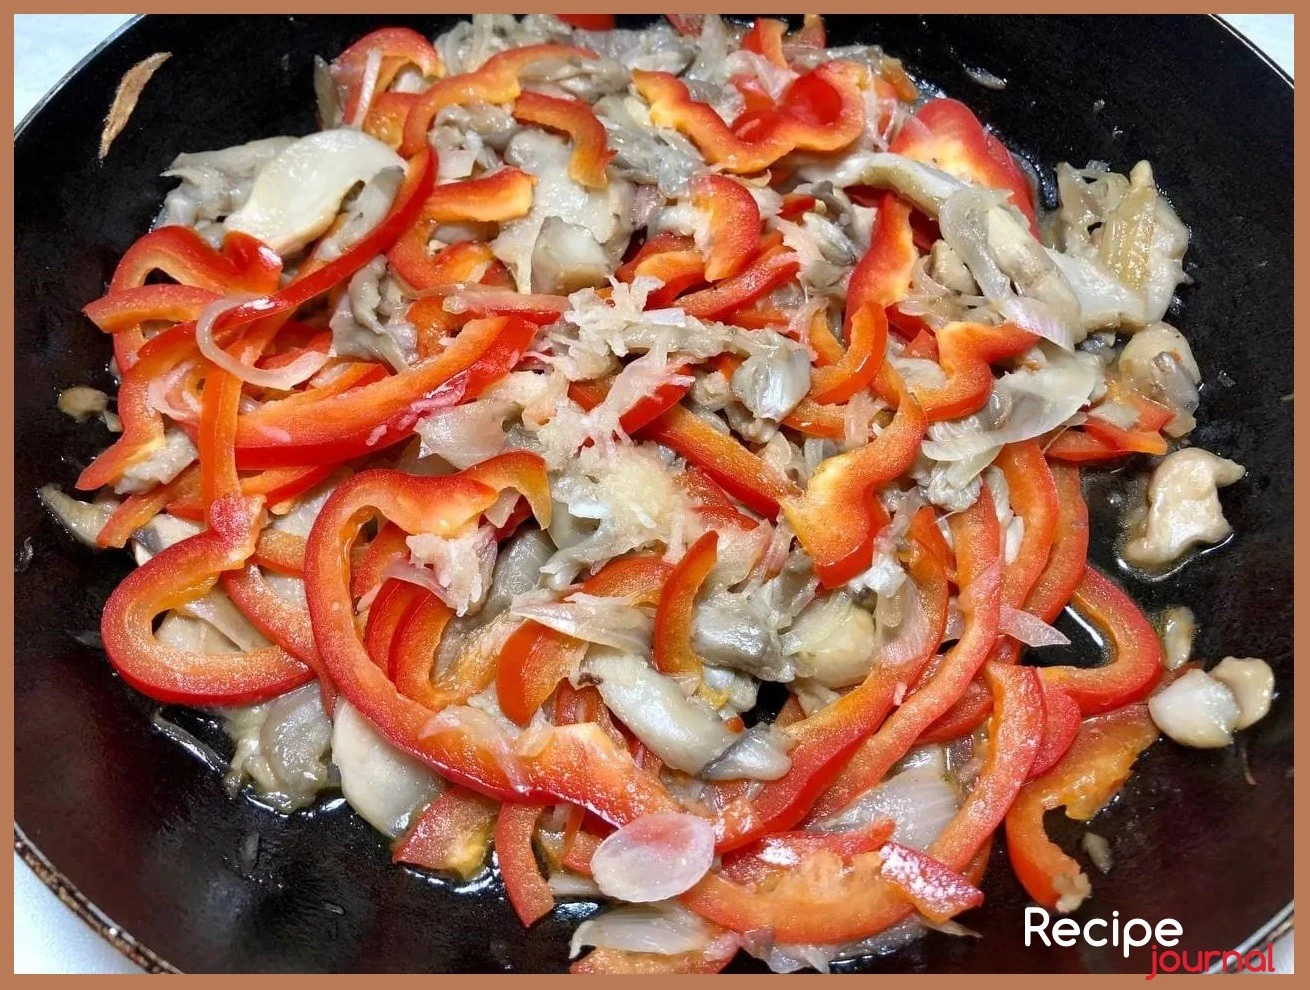 В глубокой сковороде разогреваем растительное масло, добавляем лук, пассеруем его до прозрачности, затем добавляем перец и чеснок, перемешиваем и держим на среднем огне примерно 5 минут, затем добавляем грибы, базилик, тимьян. Перемешиваем и, на среднем огне, обжариваем помешивая, полчаса. Теперь добавляем томатный соус, соль, паприку.